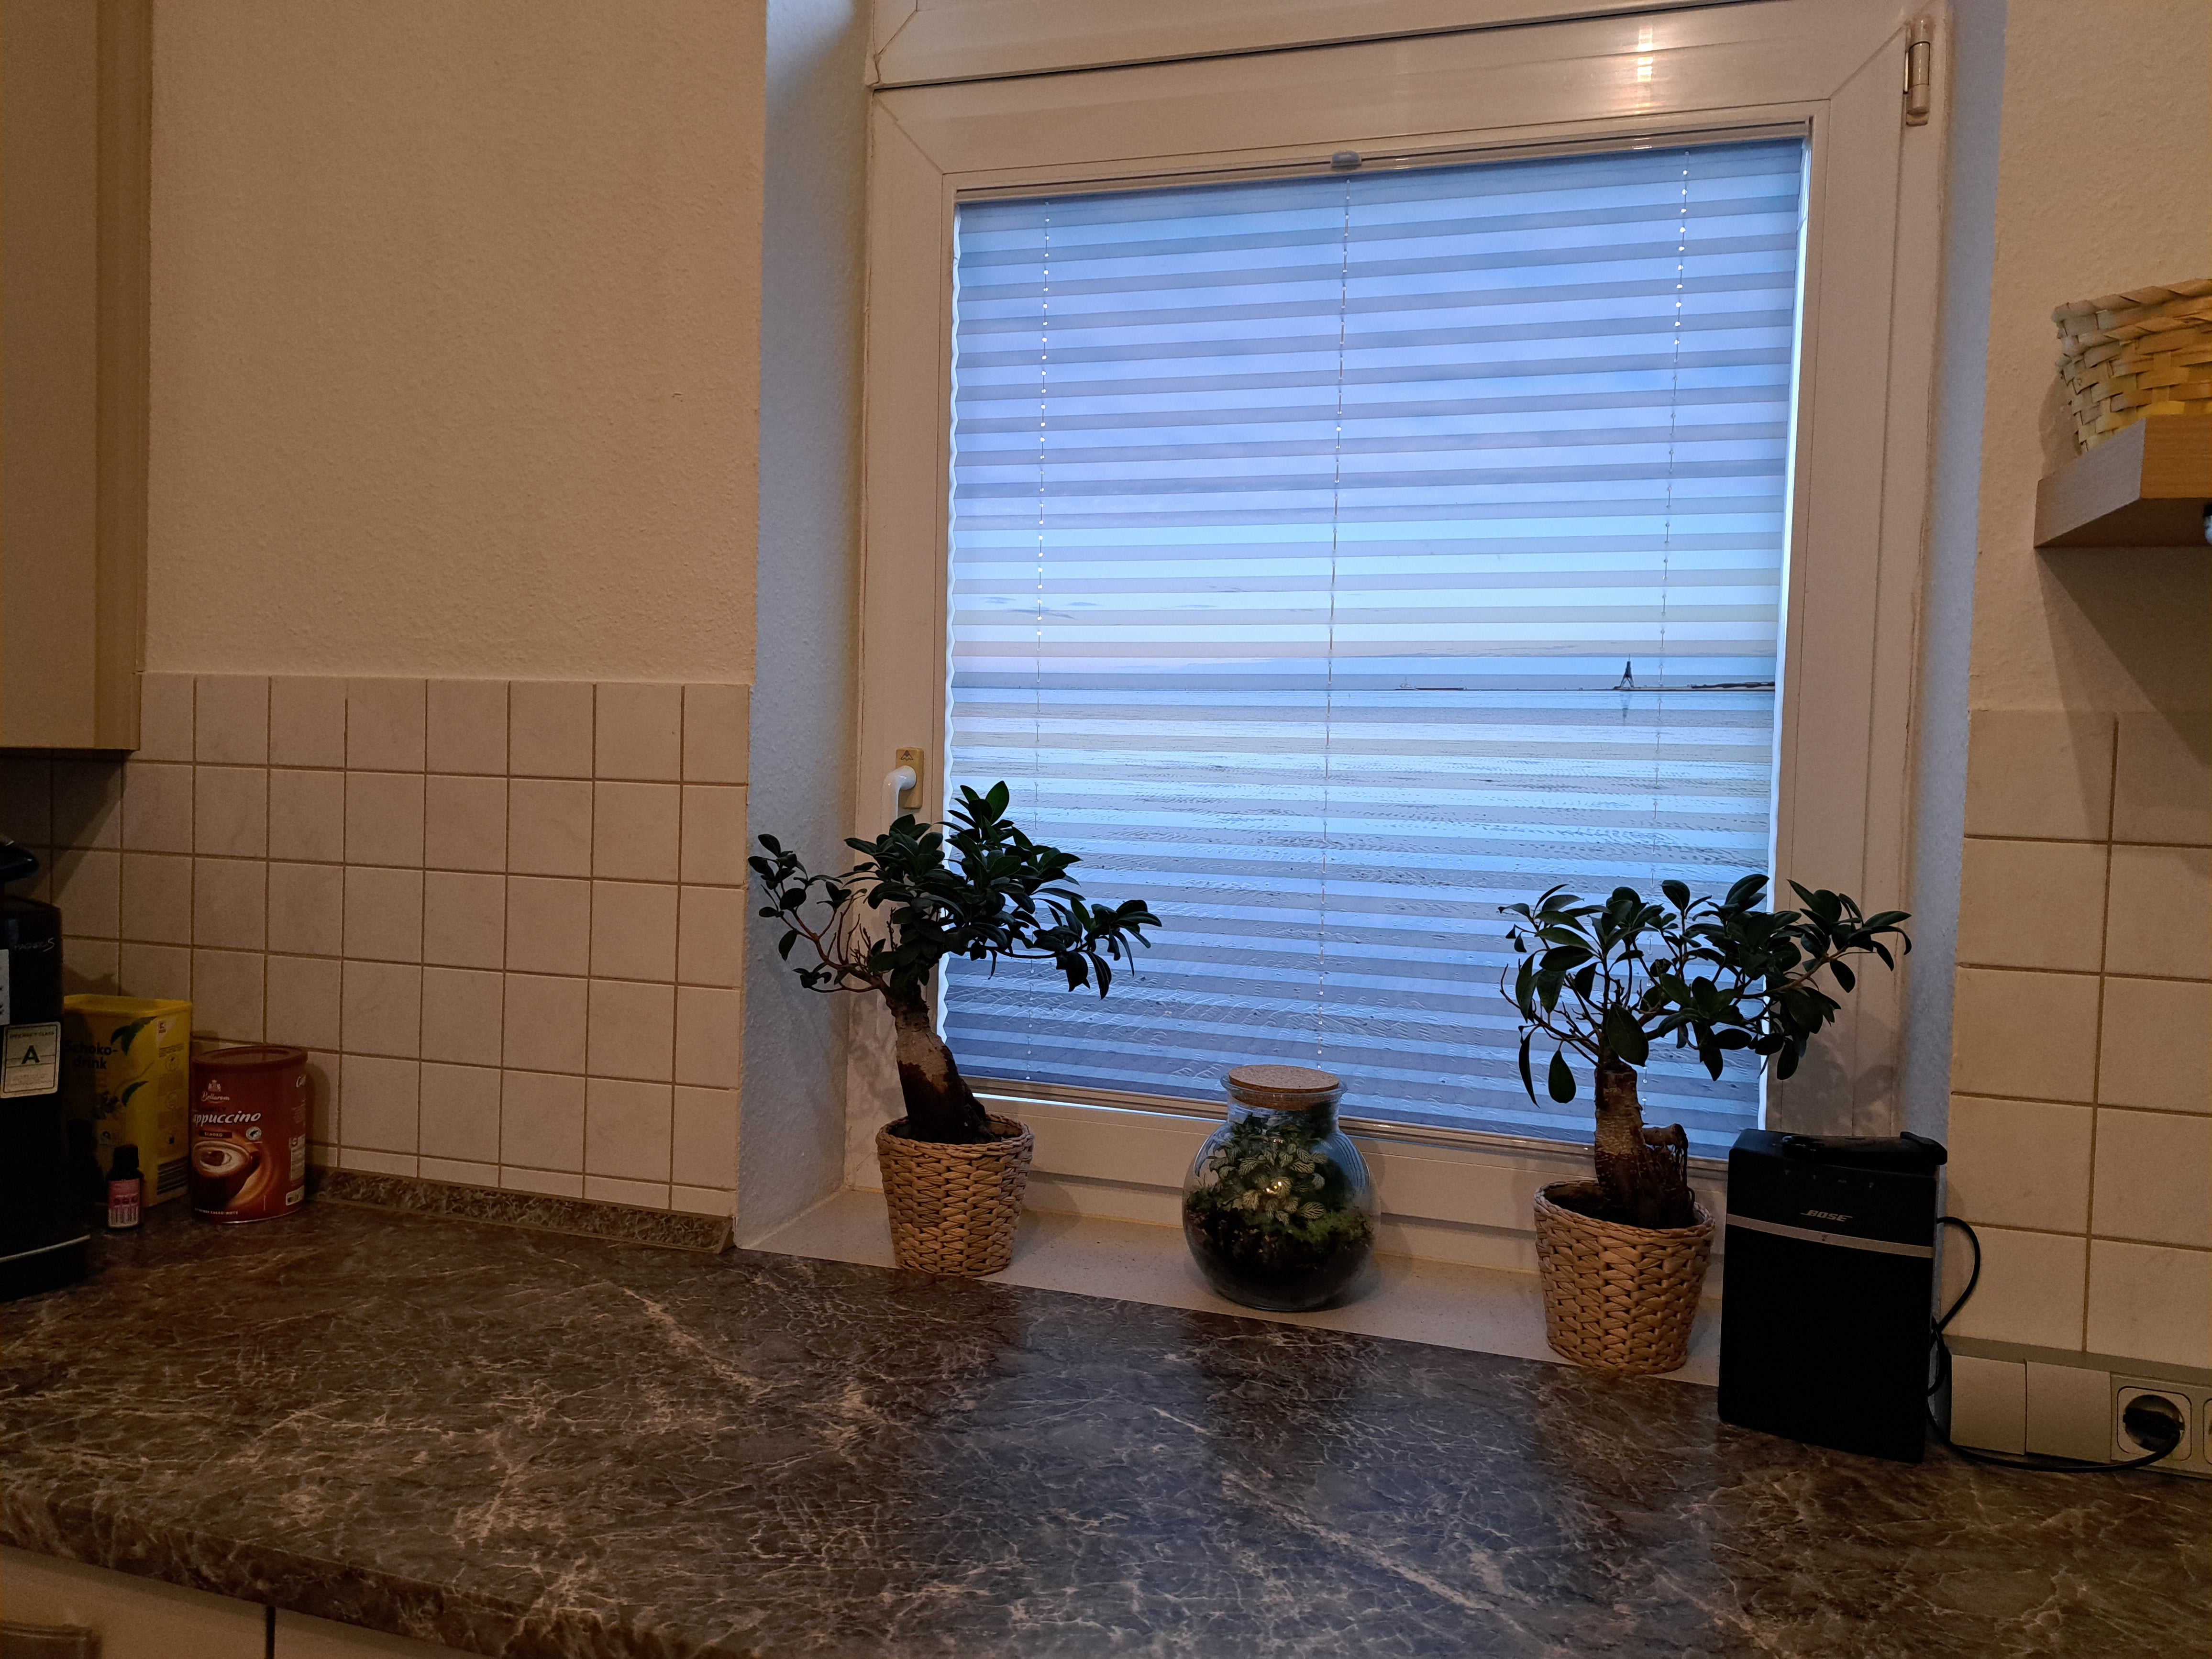 Urlaubsfoto auf Foto-Plissee gedruckt am Küchenfenster in die Glasfalz geschraubt mit Tageslicht hinterleuchtet